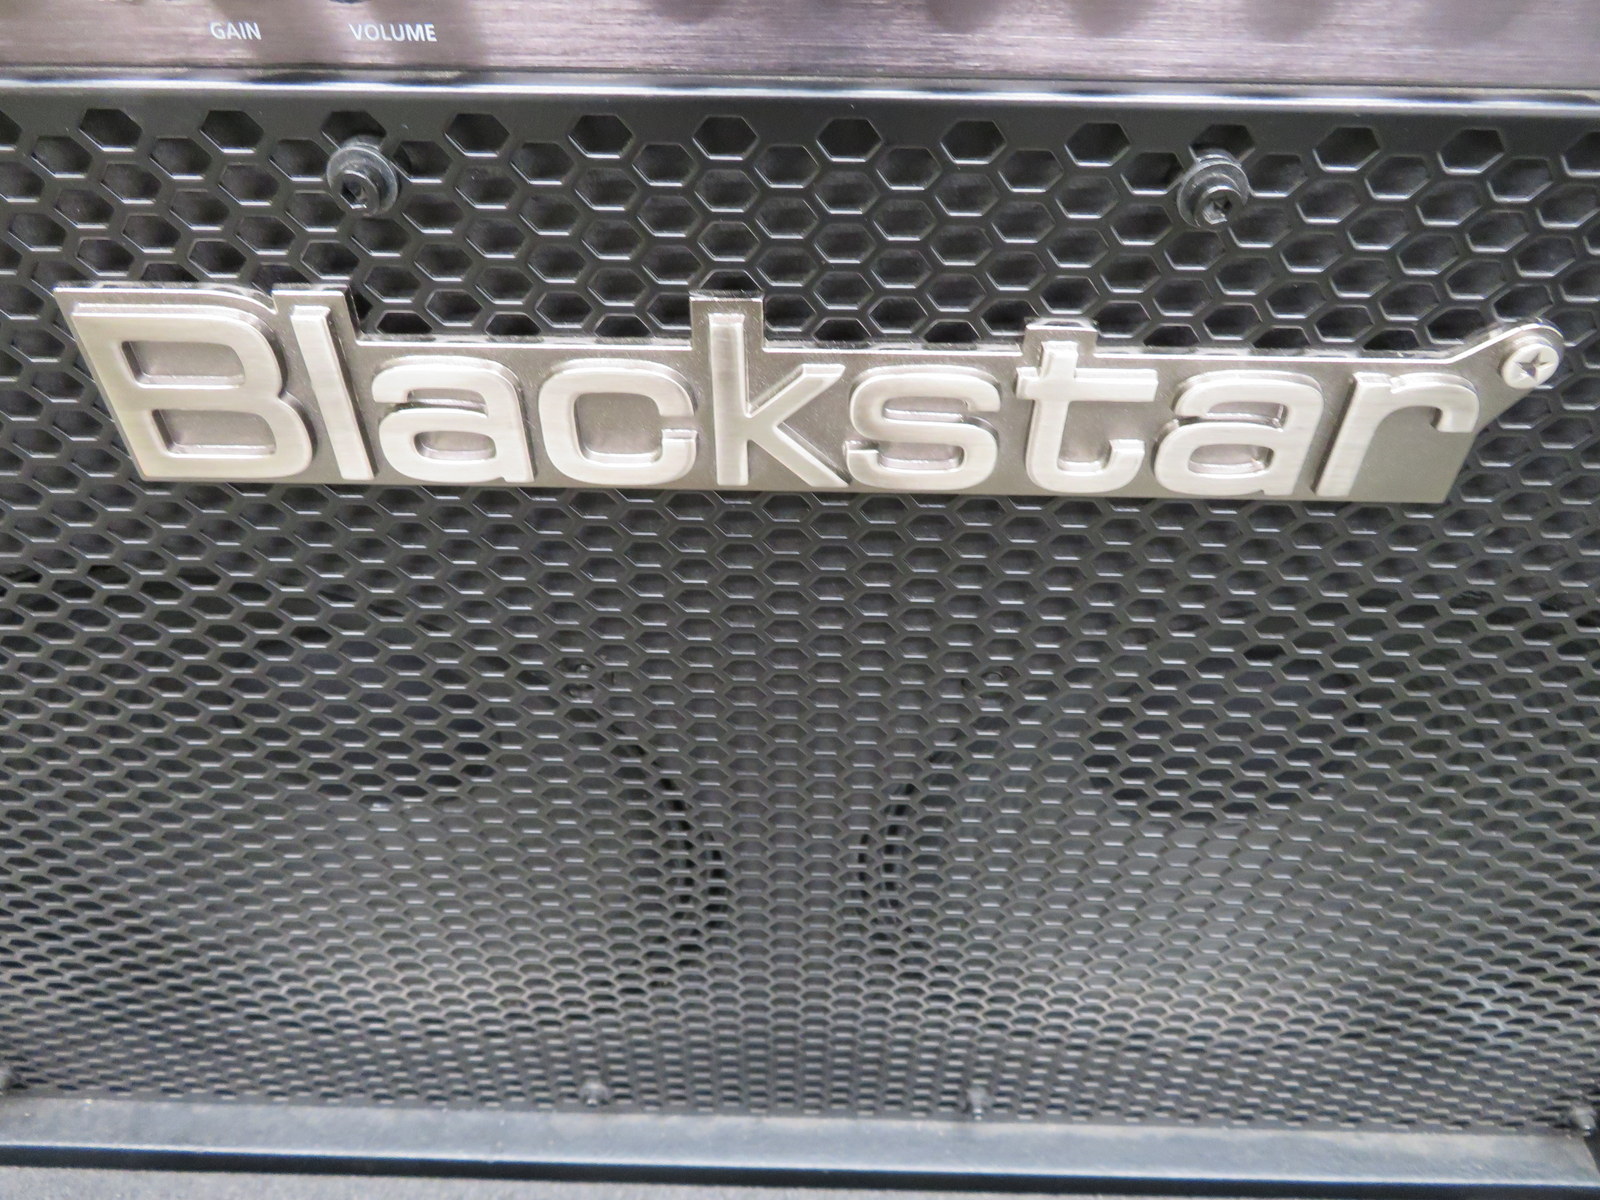 Blackstar HT Metal 60 guitar amp in flight case. Serial number: 131212HCB013. - Image 4 of 11